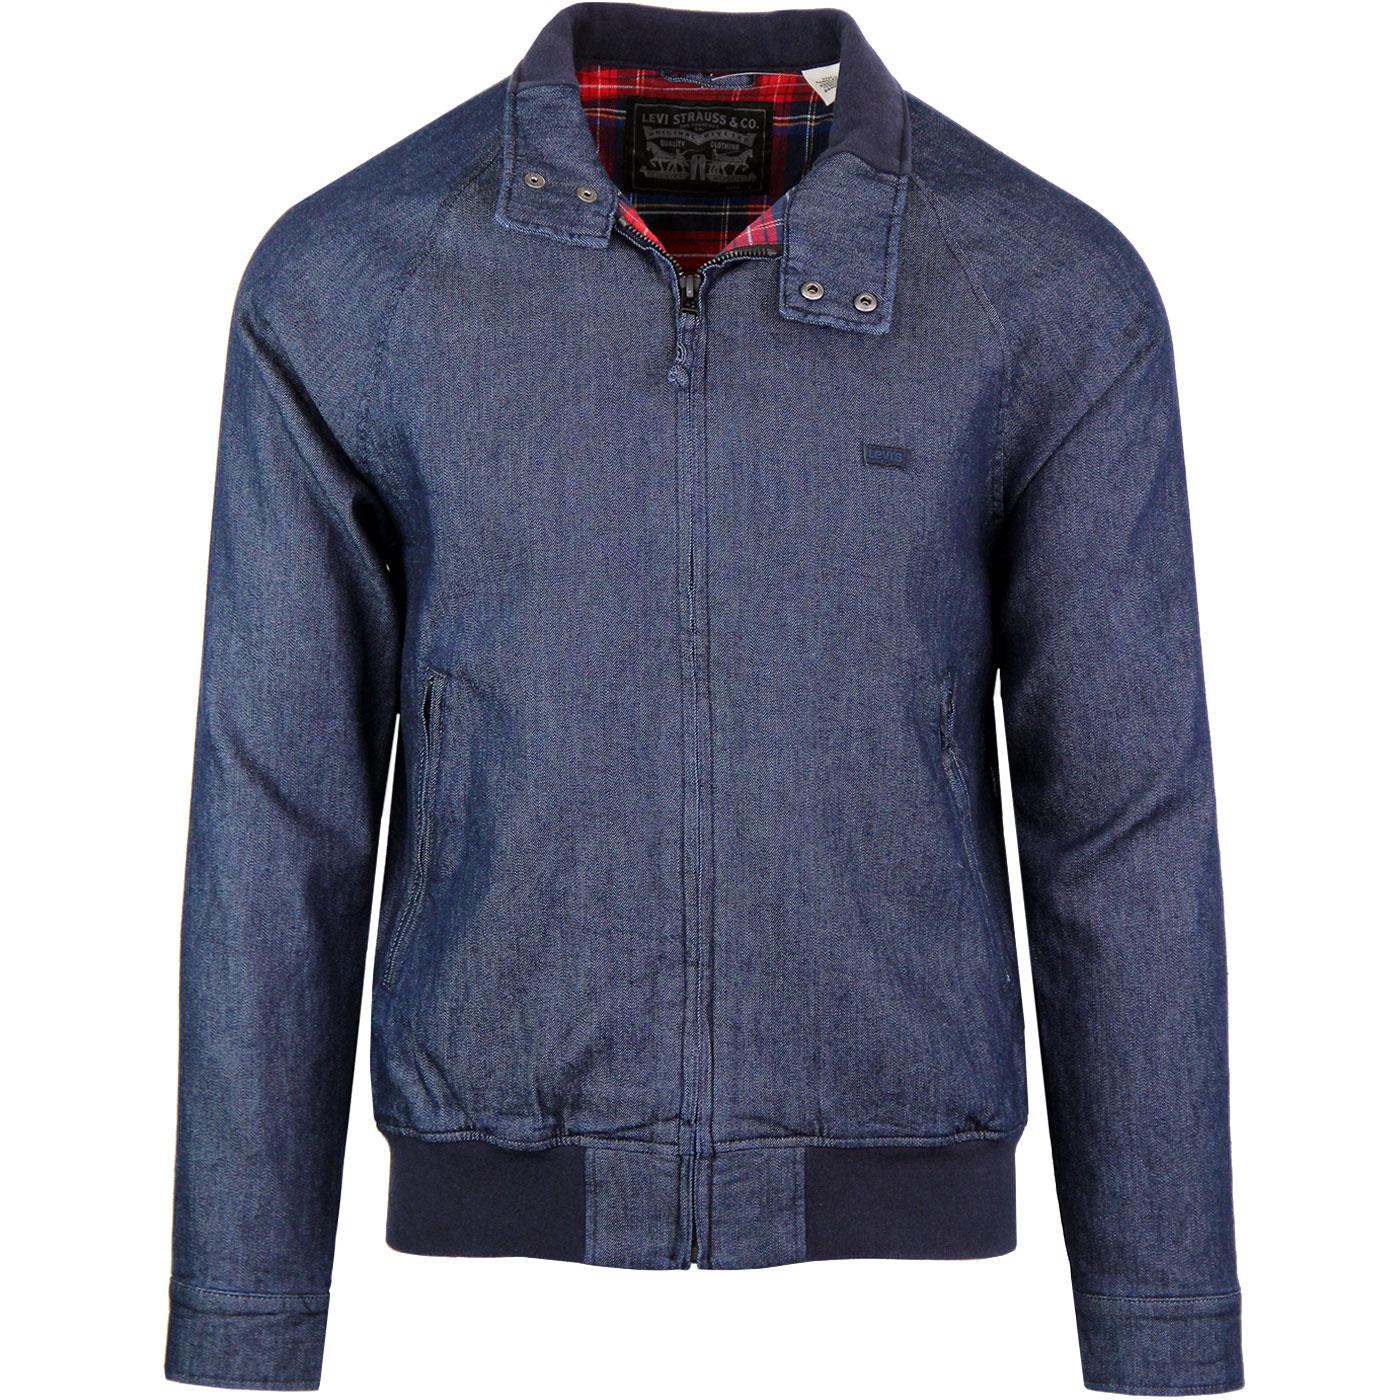 stretch harrington jacket Cheaper 